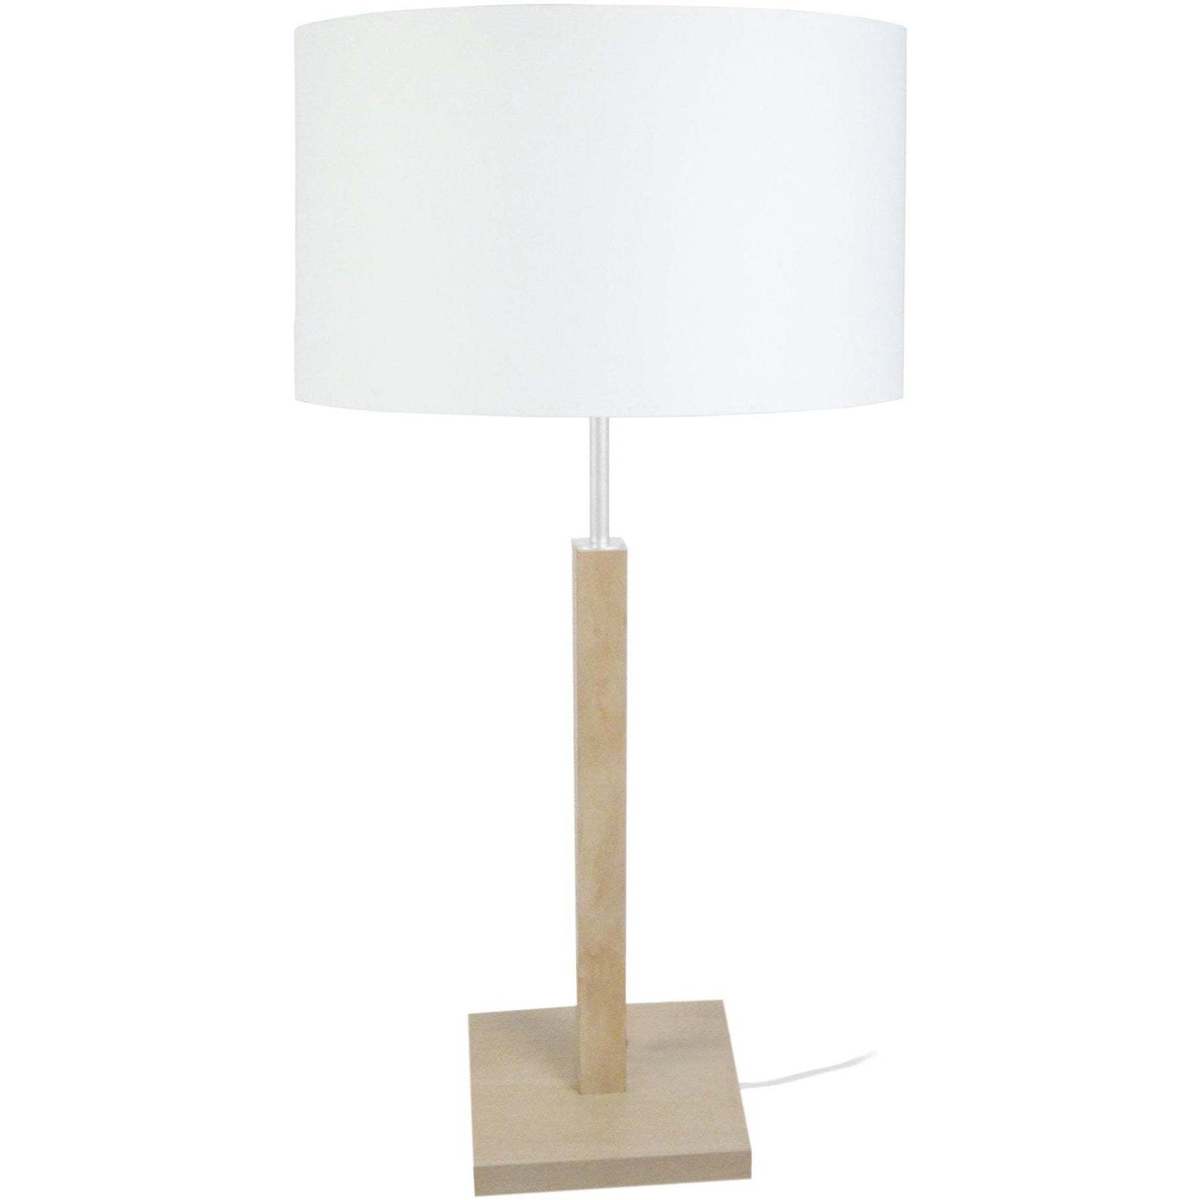 Il n'y a pas d'avis disponible pour Tosel Lampes de bureau Tosel Lampe a poser colonne bois naturel et blanc Beige